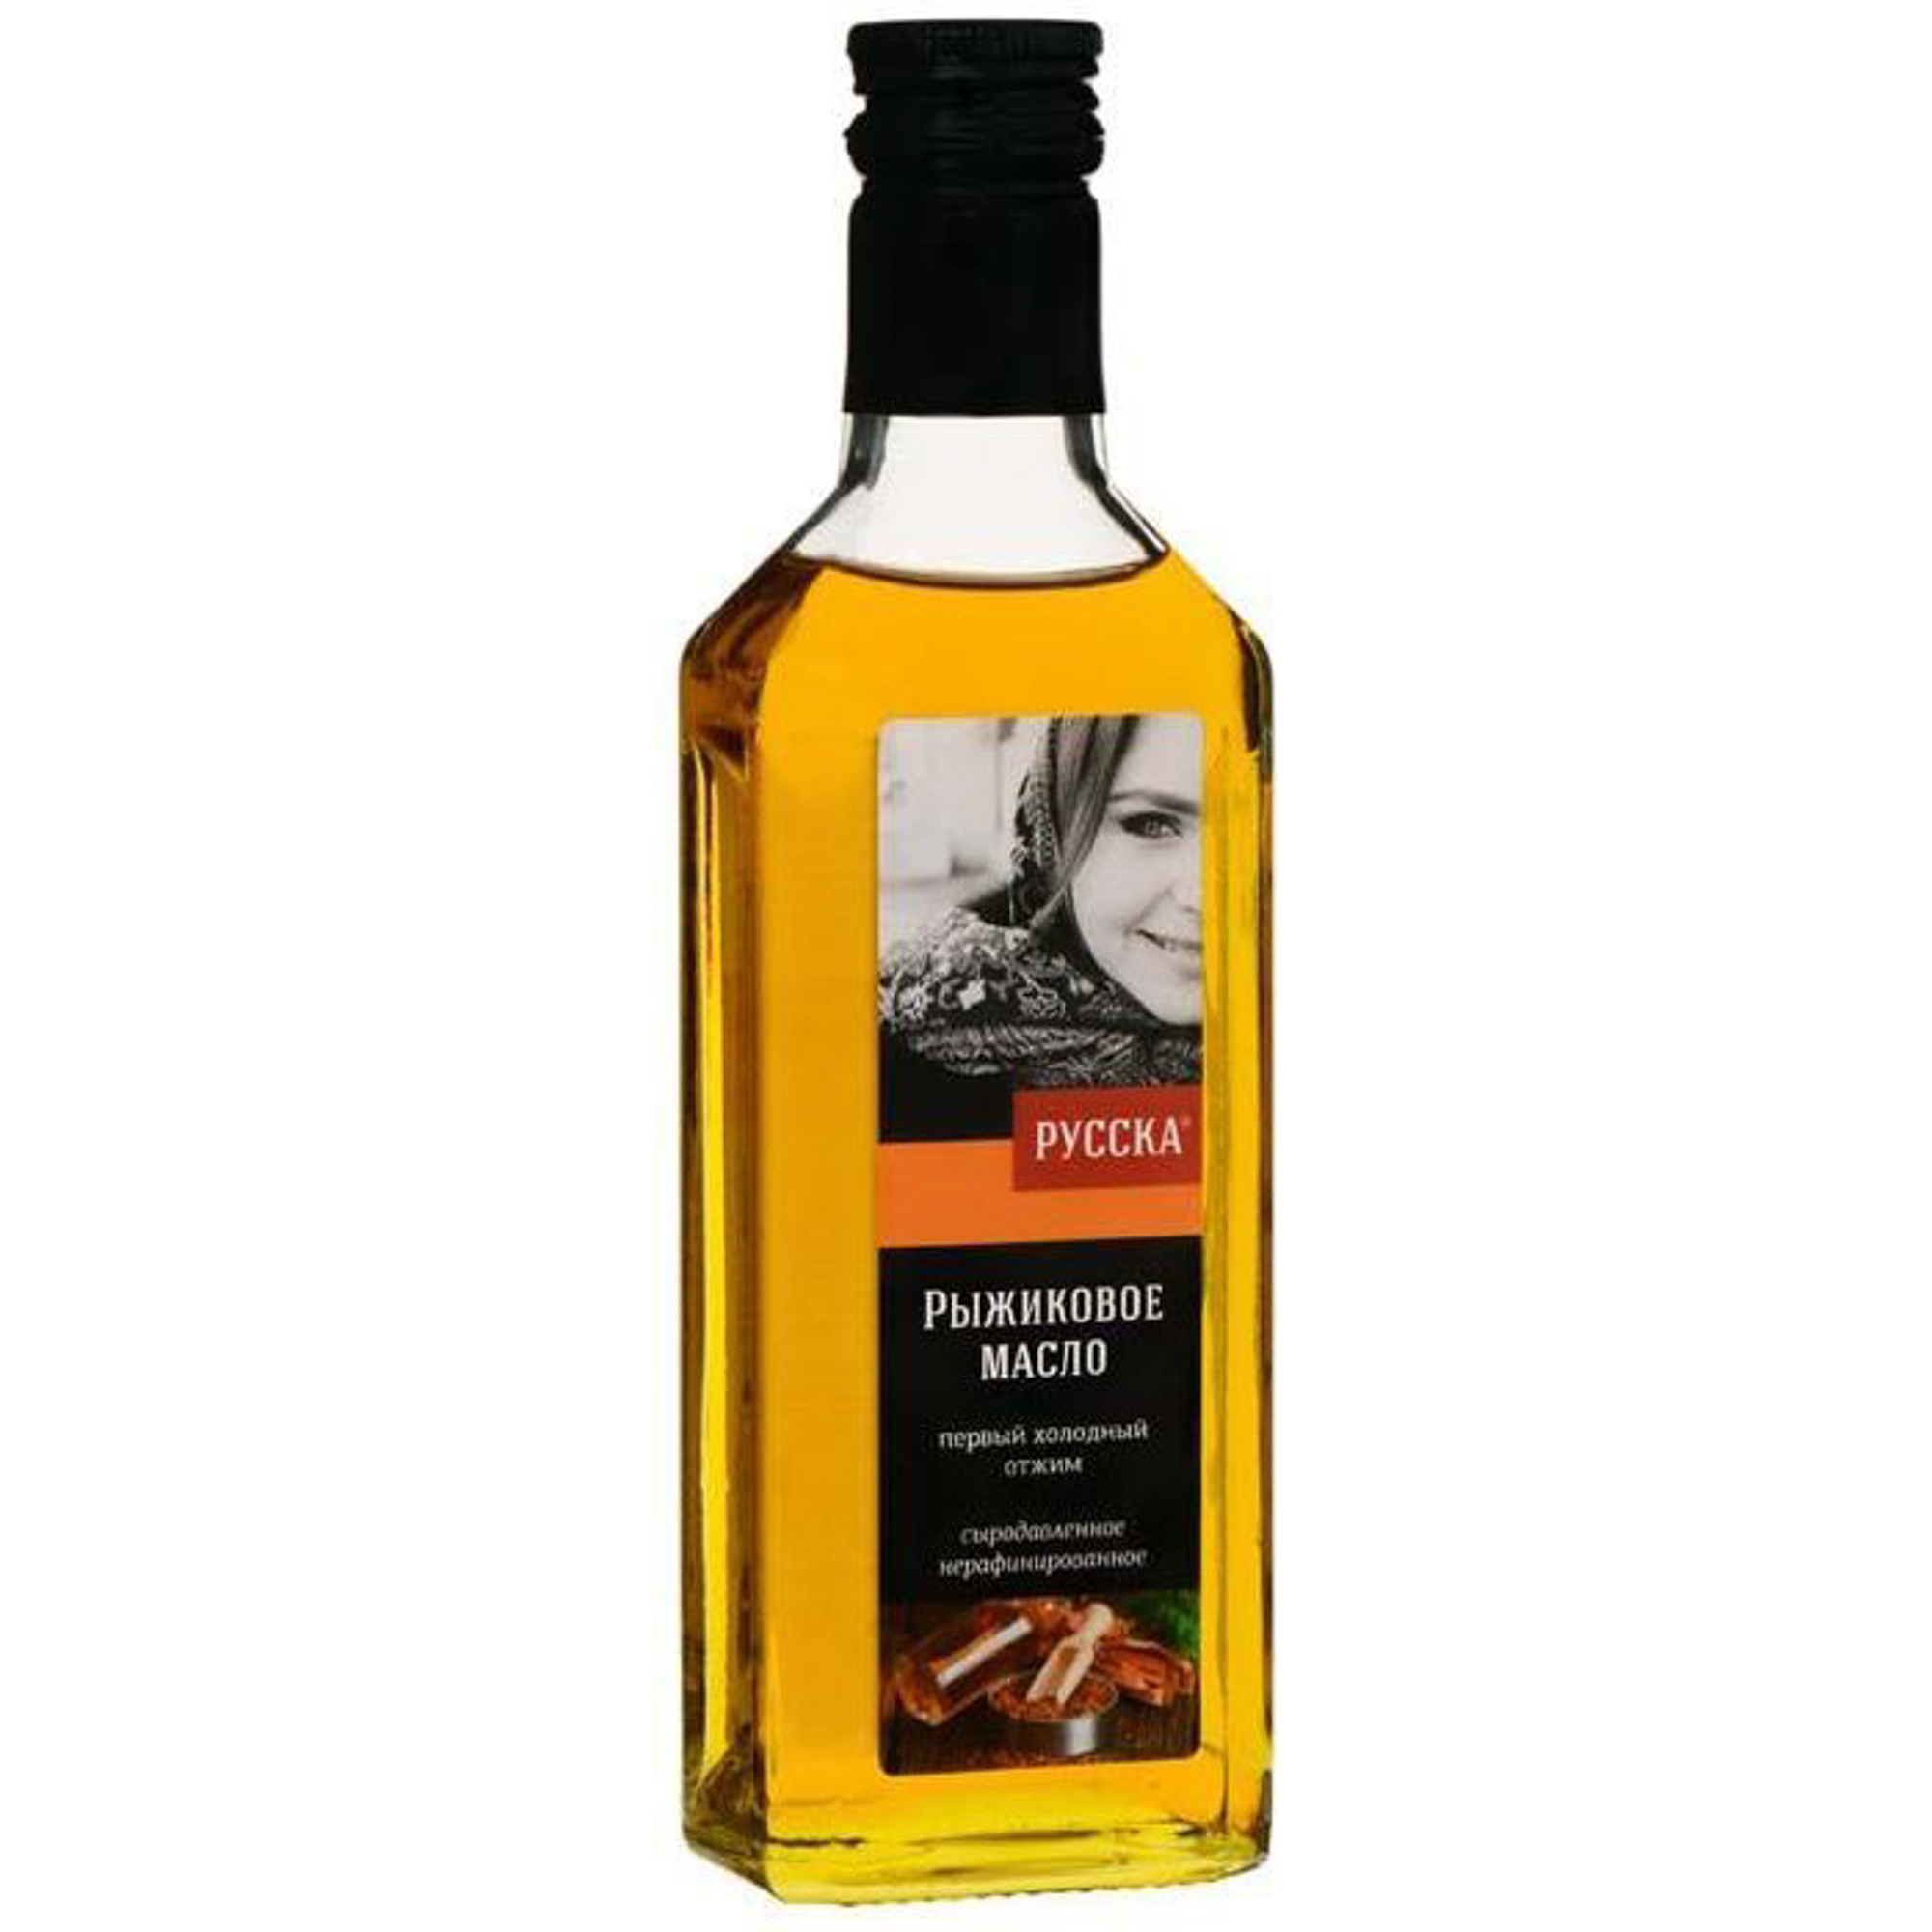 Масло рыжиковое Русска 250 мл масло оливковое la espanola extra virgin нерафинированное 1 литр